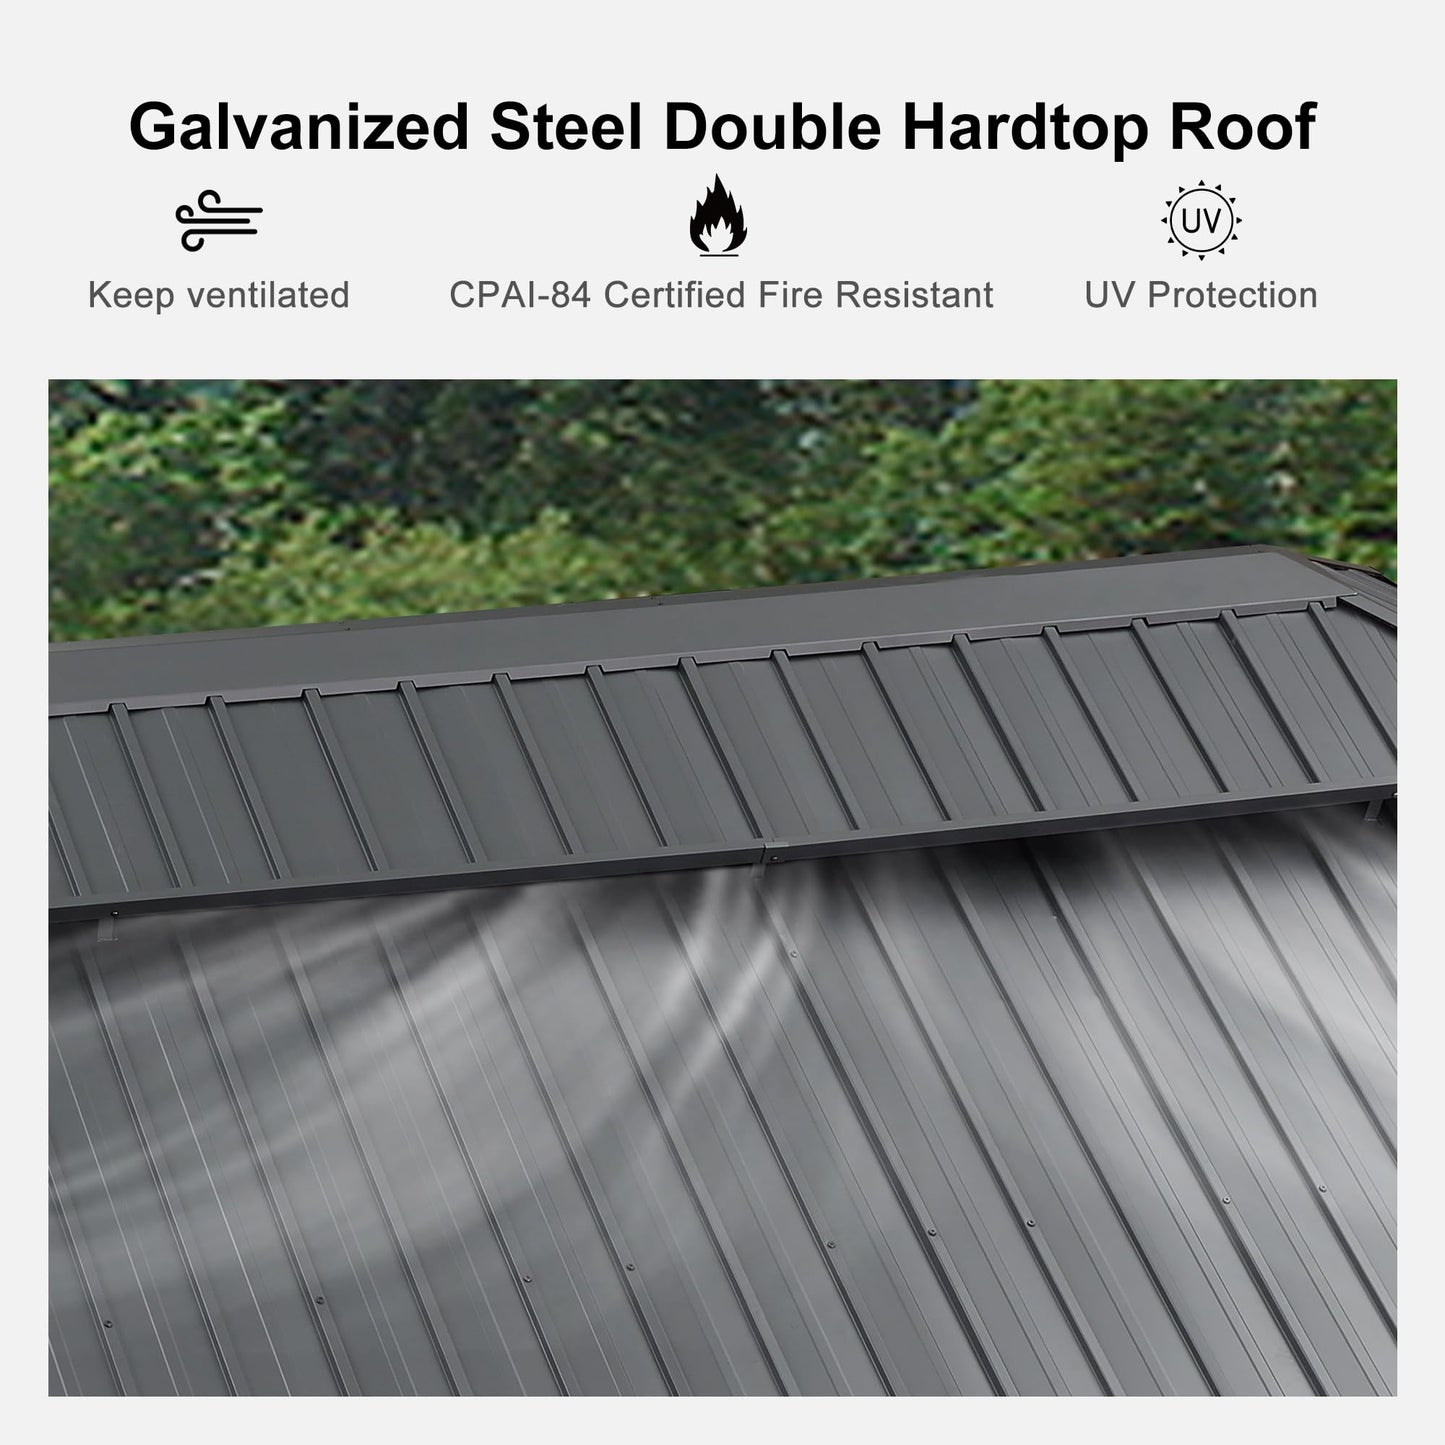 PURPLE LEAF Cenador permanente de aluminio con techo rígido de 12' x 18' con techo doble de acero galvanizado para patio, césped y jardín, cortinas y red incluidas, gris